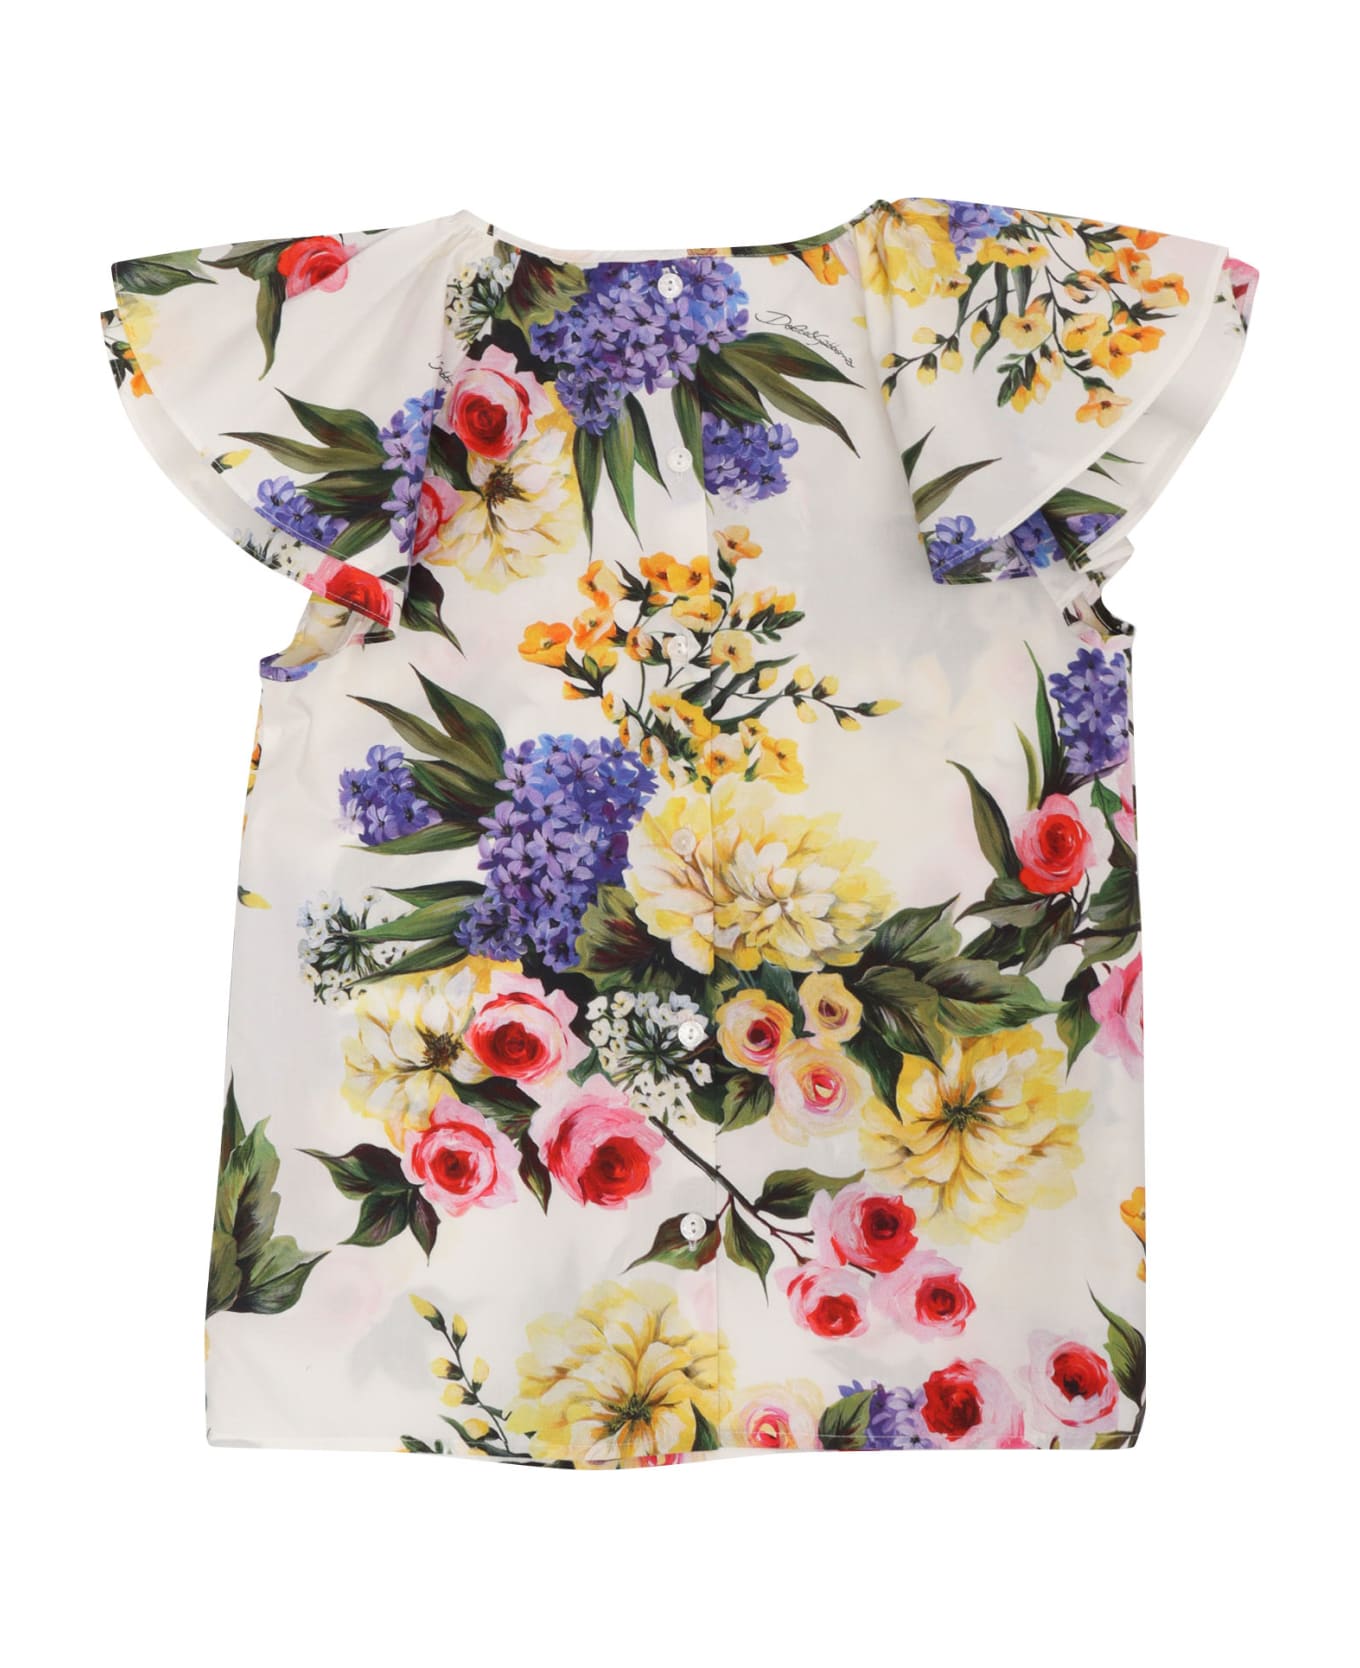 Dolce & Gabbana D&g Floral Print T-shirt - GREEN トップス